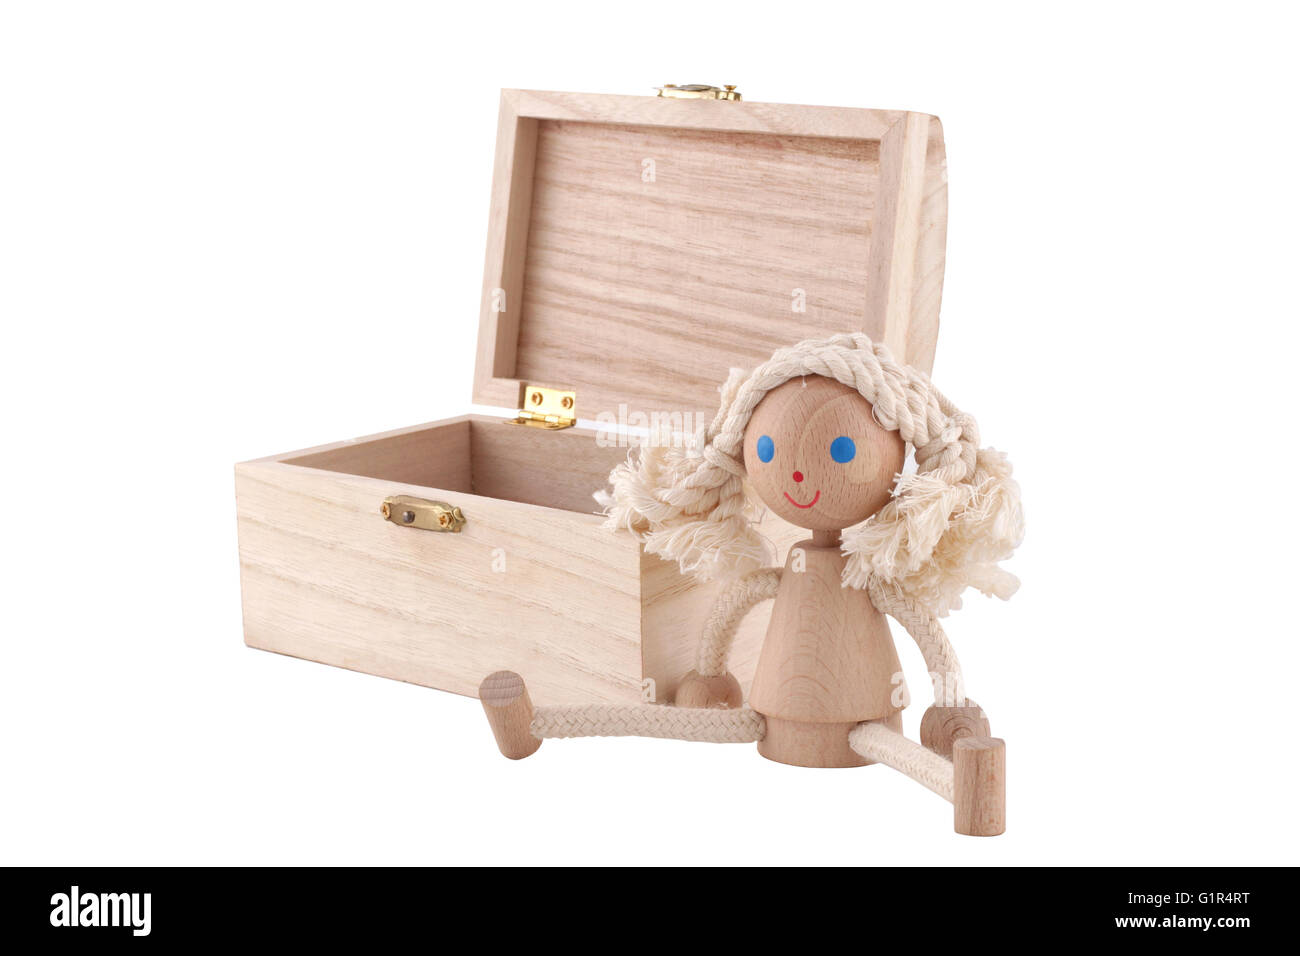 L'horizontale vue frontale d'une poupée jouet en bois à proximité d'une poitrine sur fond blanc Banque D'Images